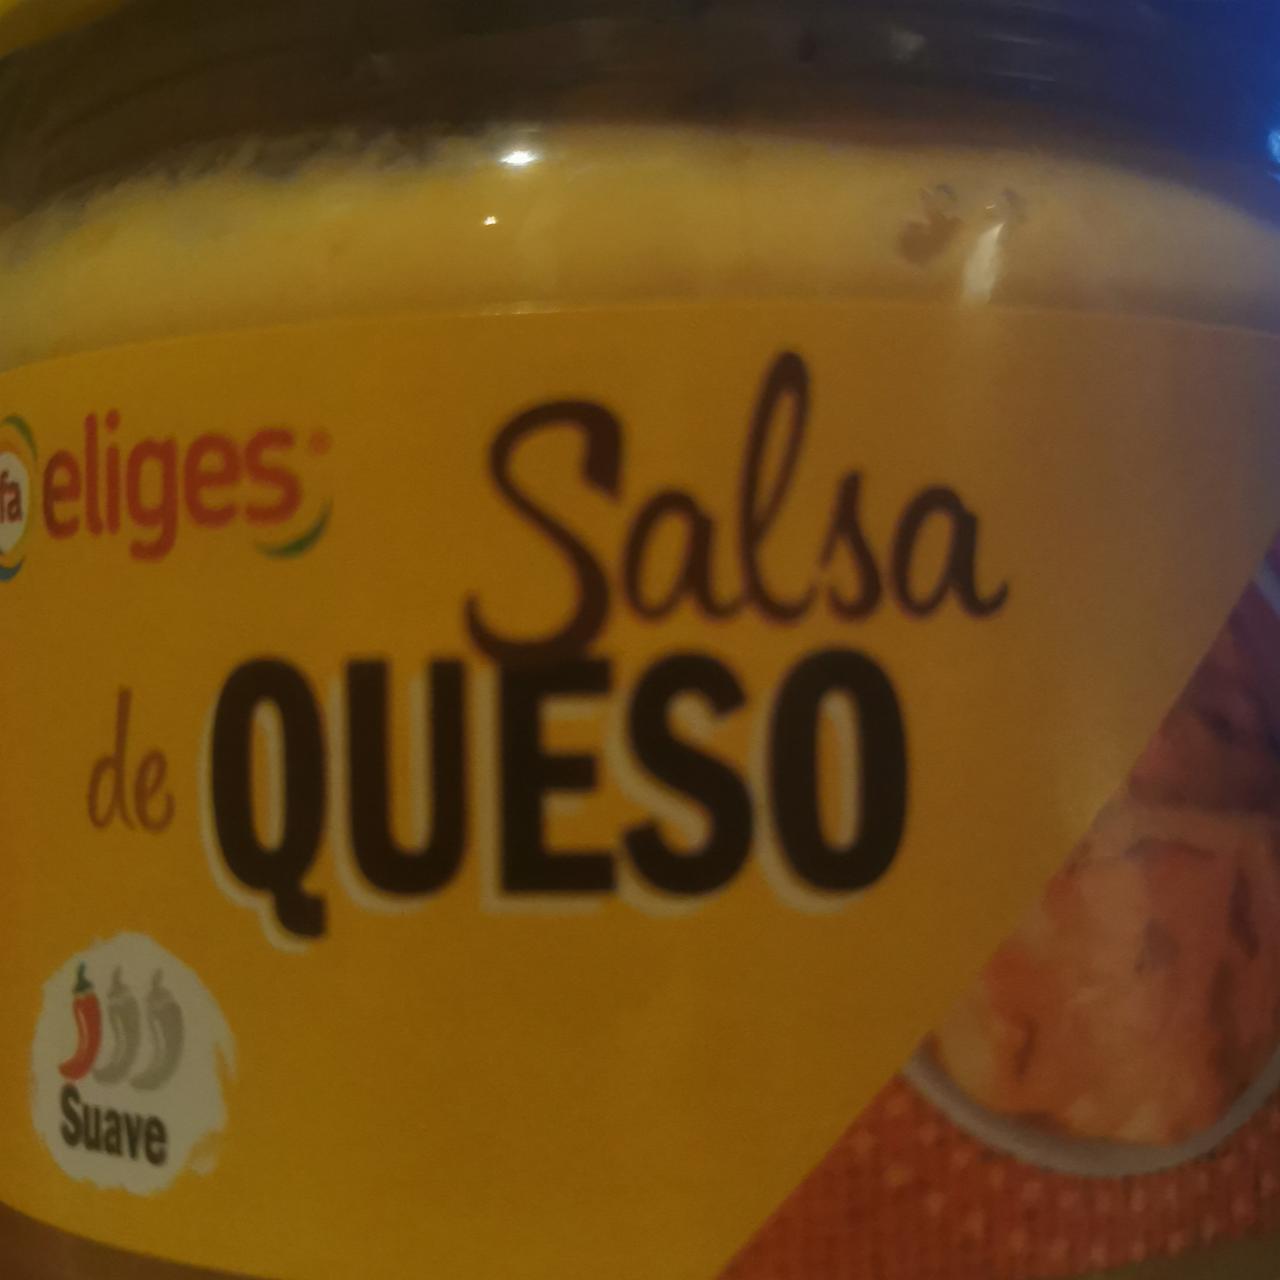 Fotografie - Salsa de Queso eliges